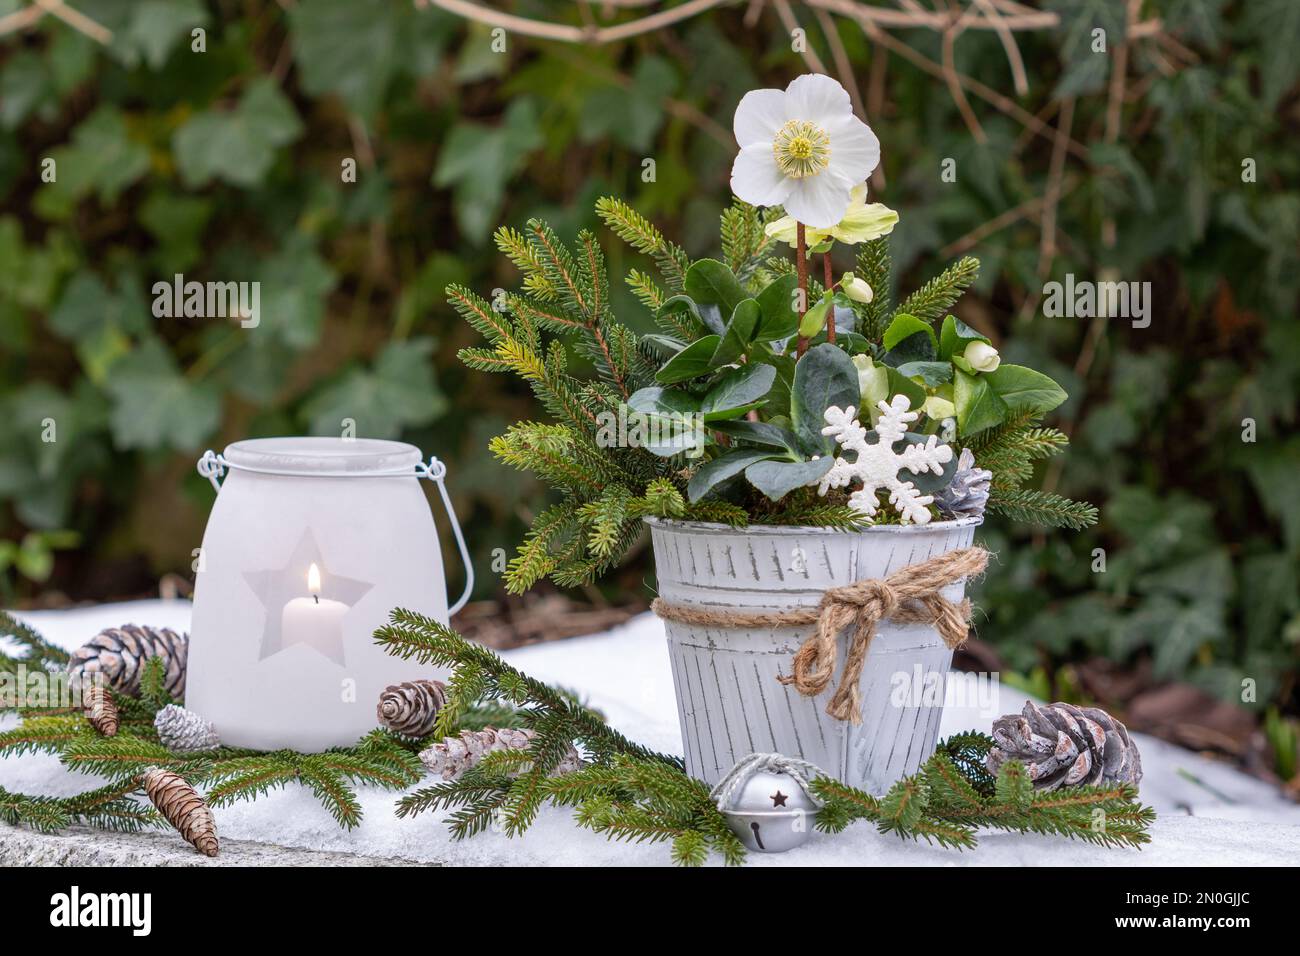 Wintergarten-Arrangement mit helleborus niger in altem Topf und Laterne Stockfoto